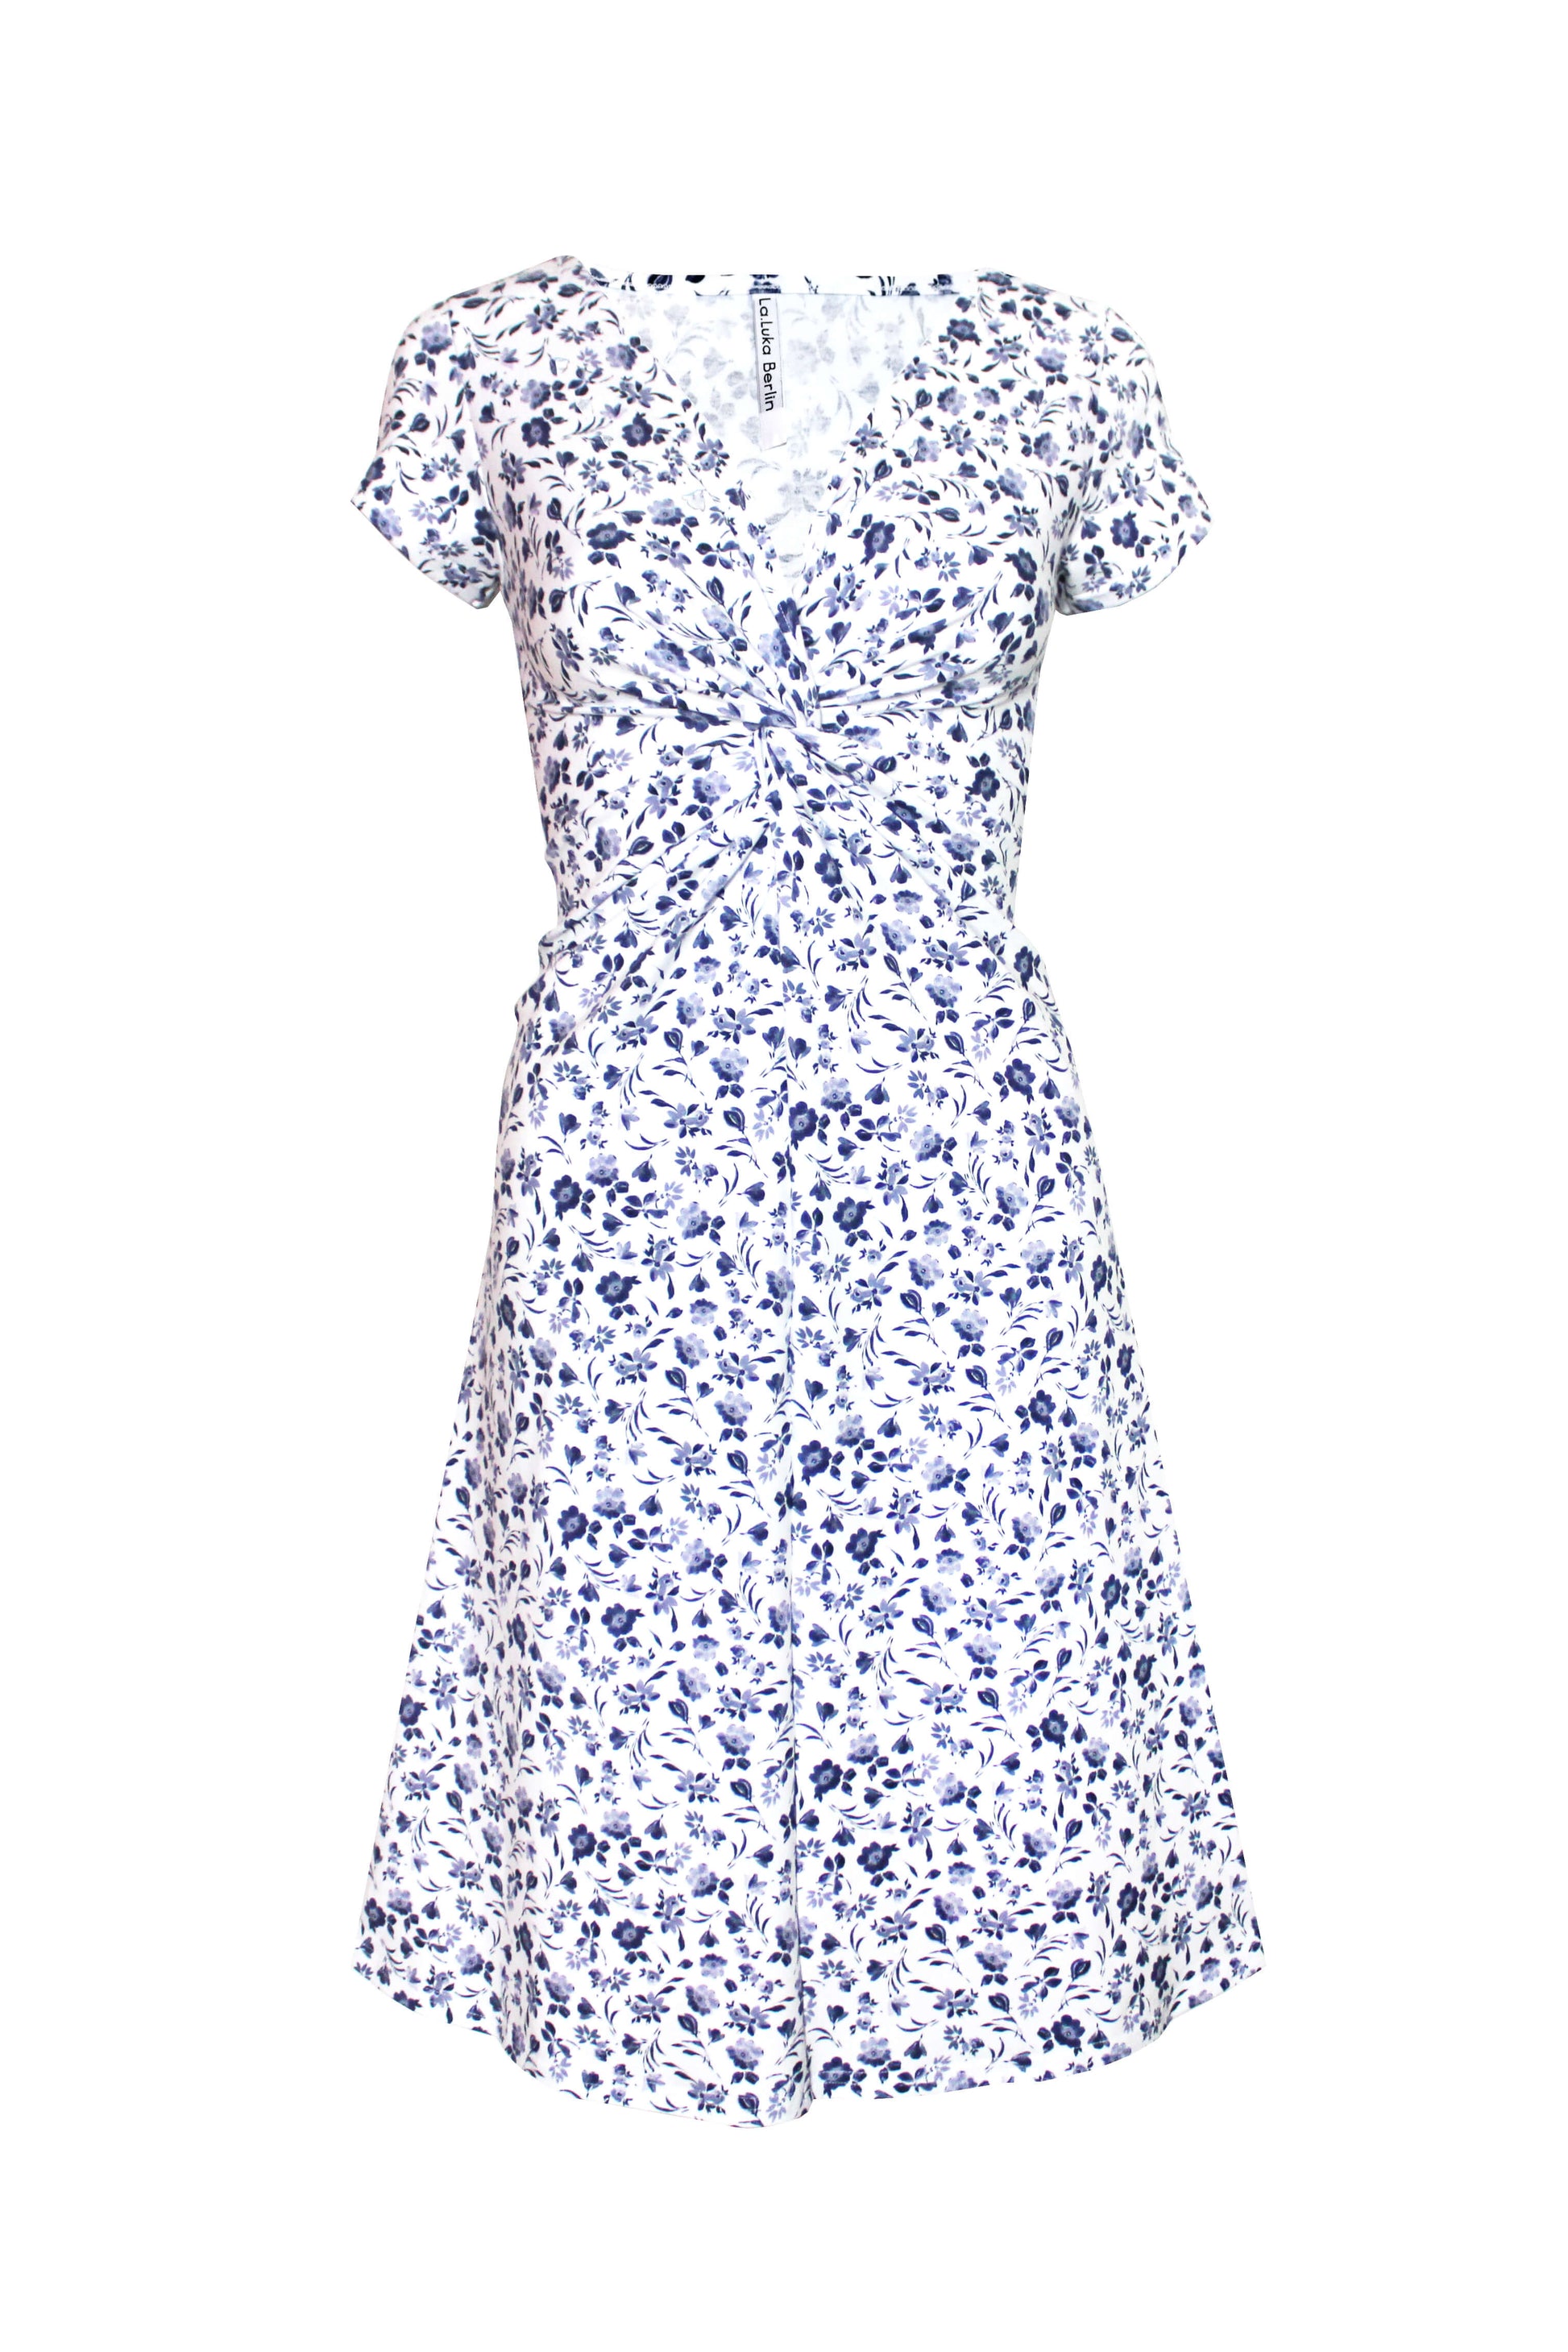 Knielanges Sommerkleid in weiß mit blauen Blumenmuster aus Baumwolle von LA.LUKA Berlin.